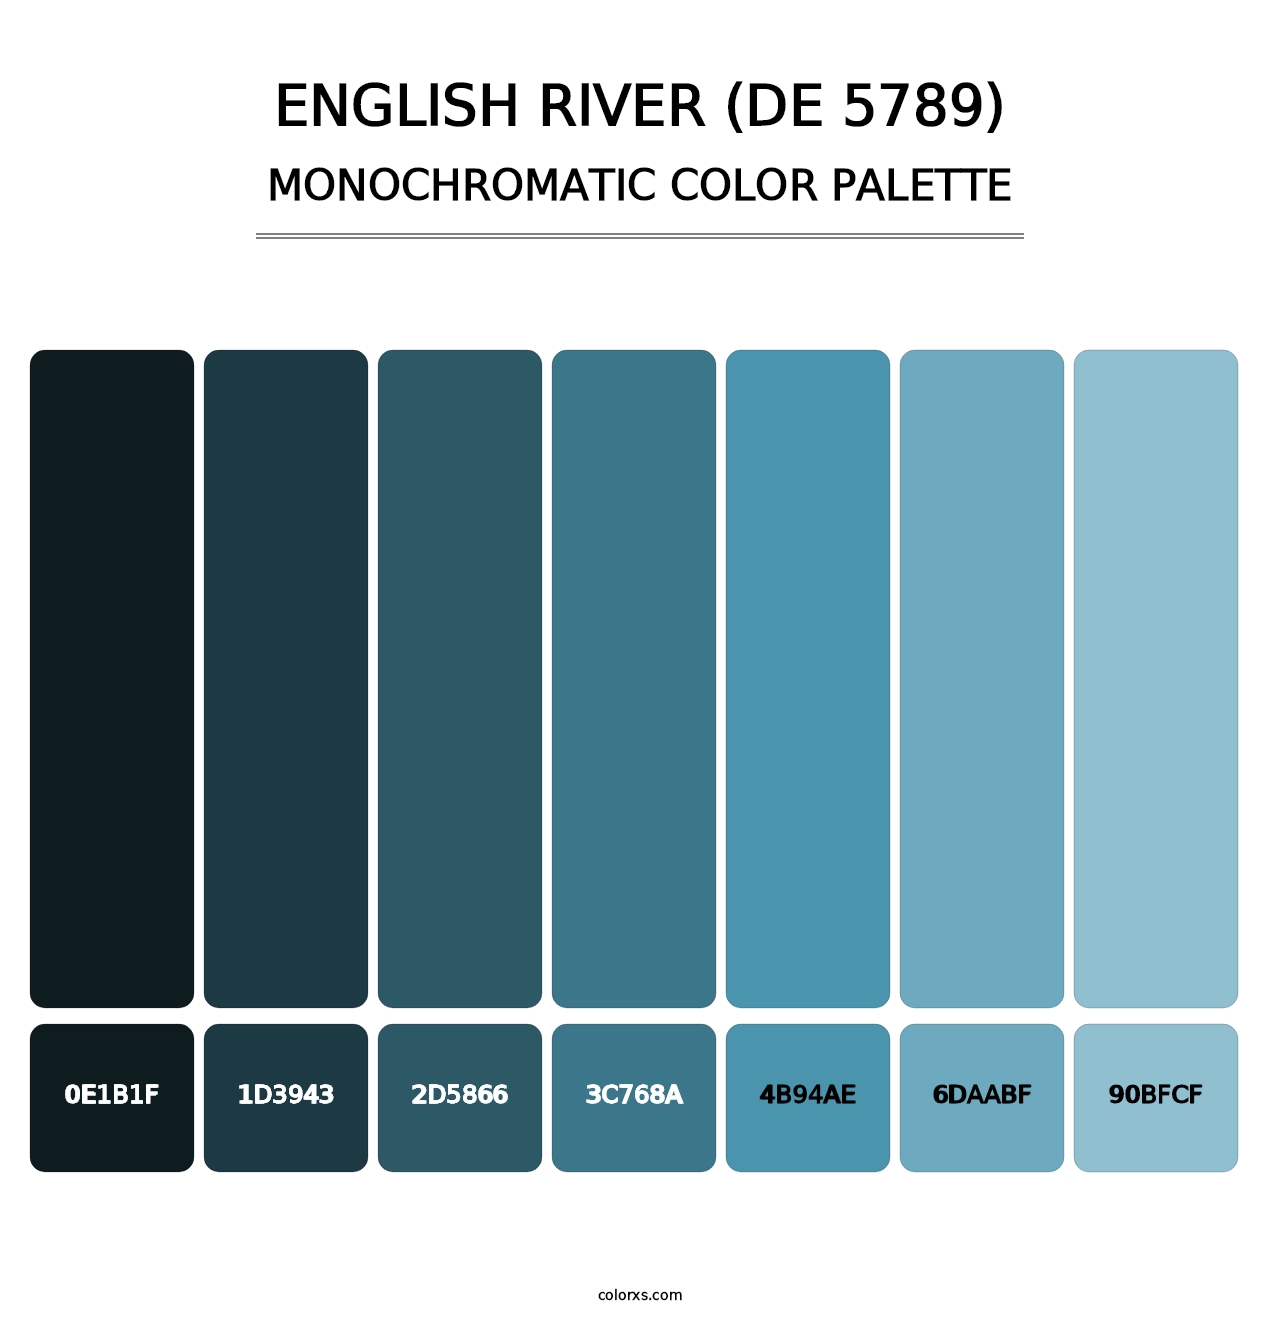 English River (DE 5789) - Monochromatic Color Palette